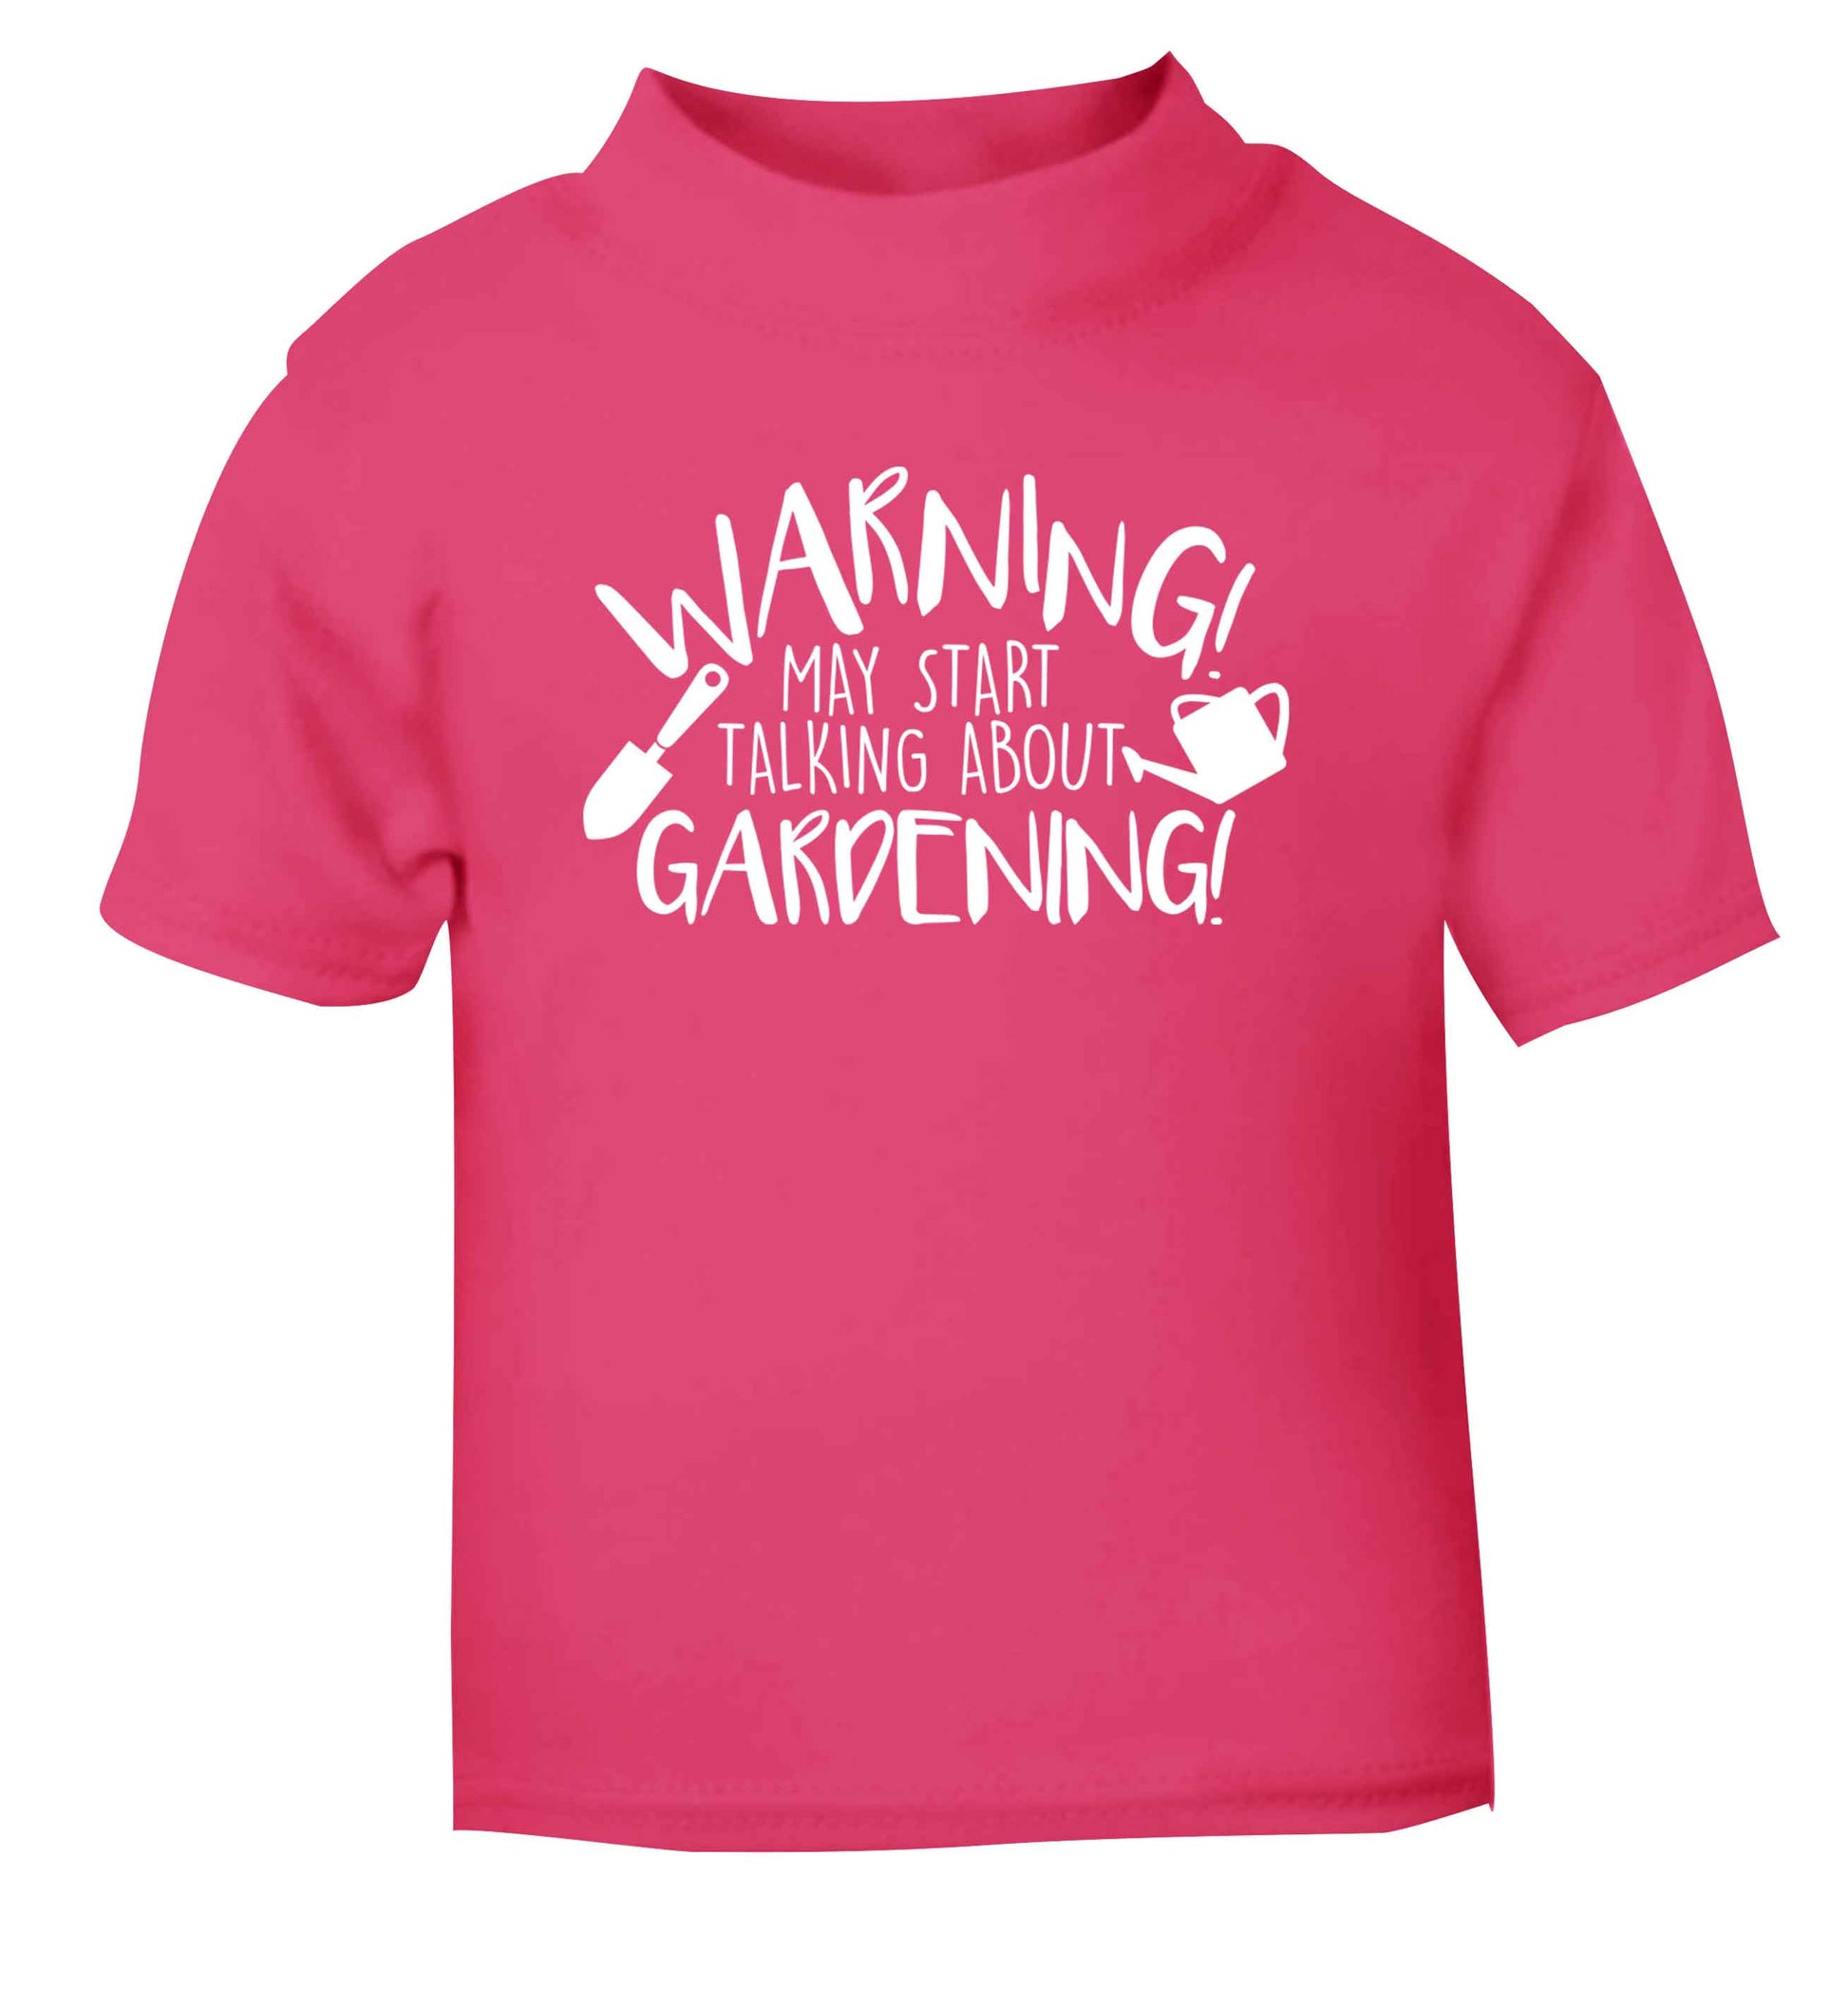 Warning may start talking about gardening pink Baby Toddler Tshirt 2 Years